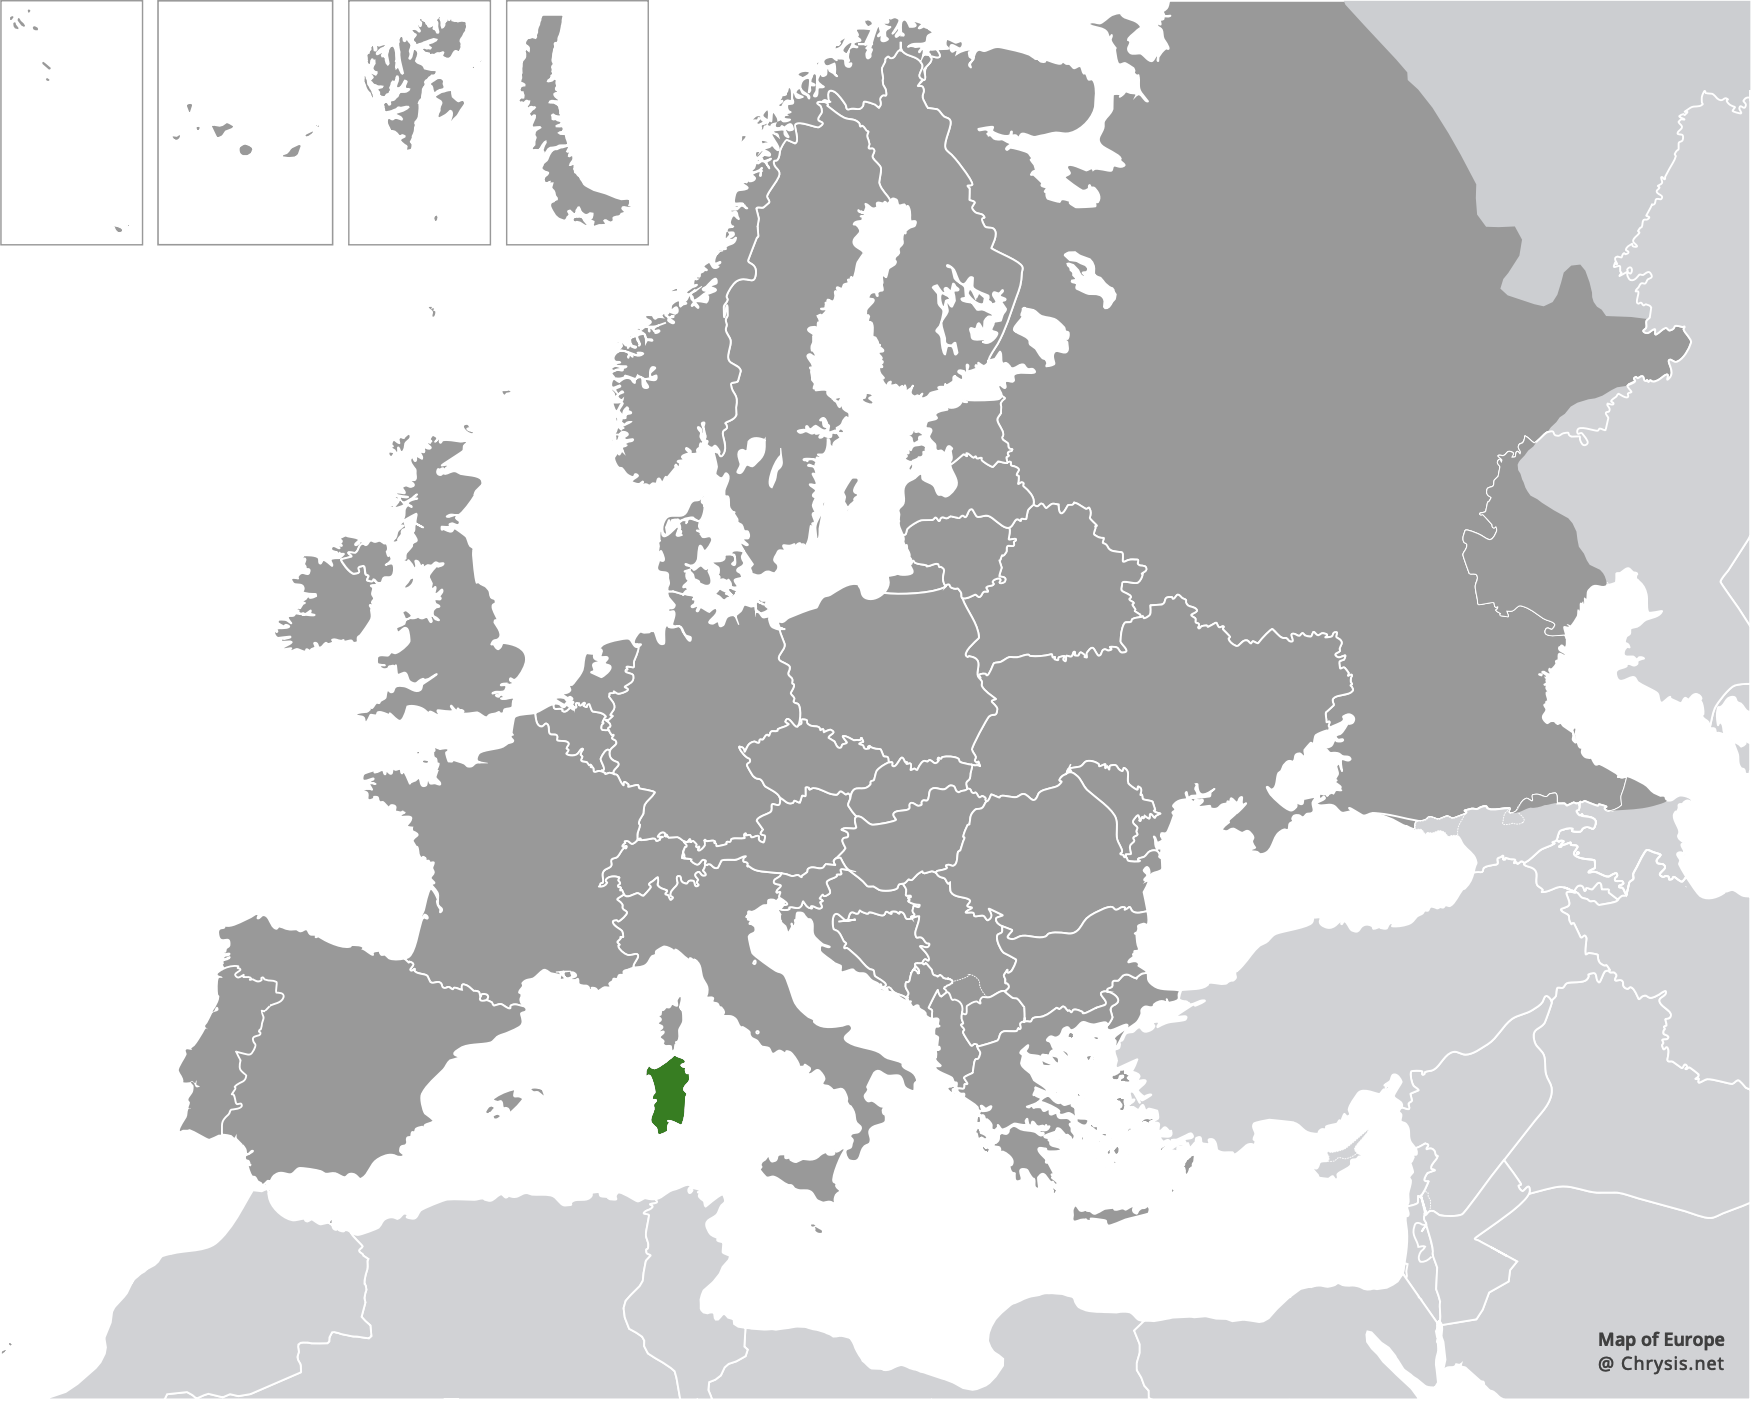 European distribution of Chrysis paglianoi Strumia, 1992